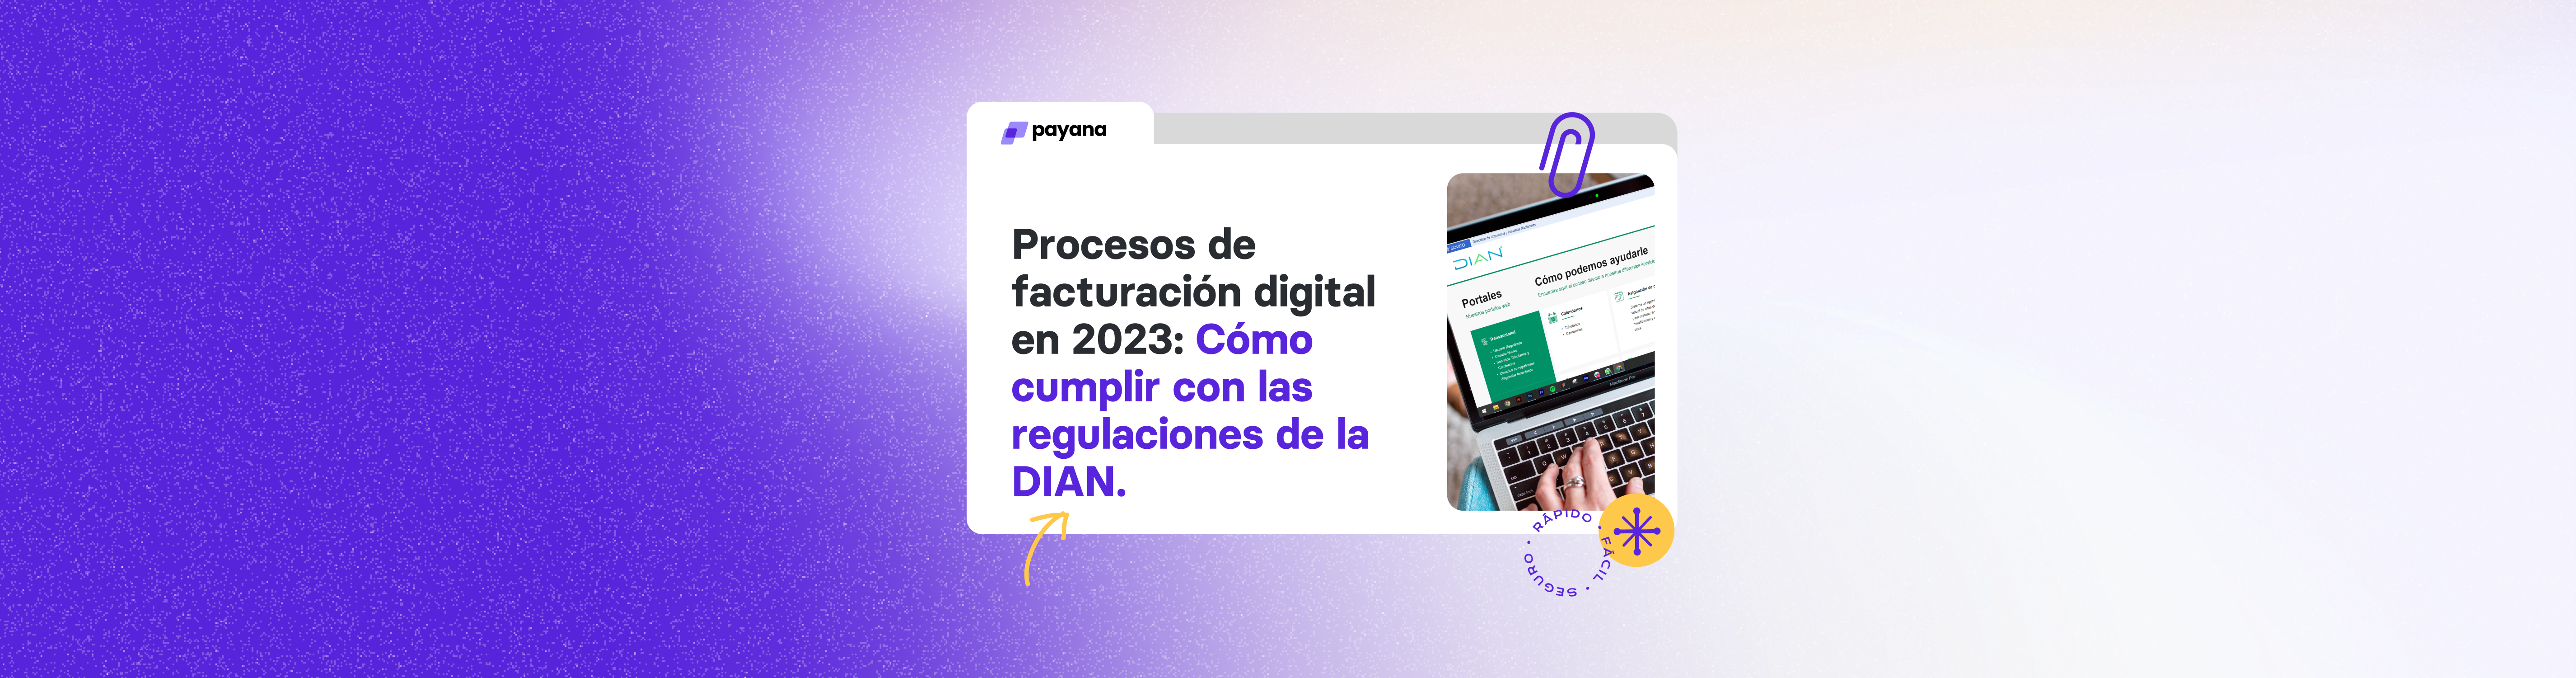 Procesos de facturación digital en 2023: Cómo cumplir con las regulaciones de la DIAN